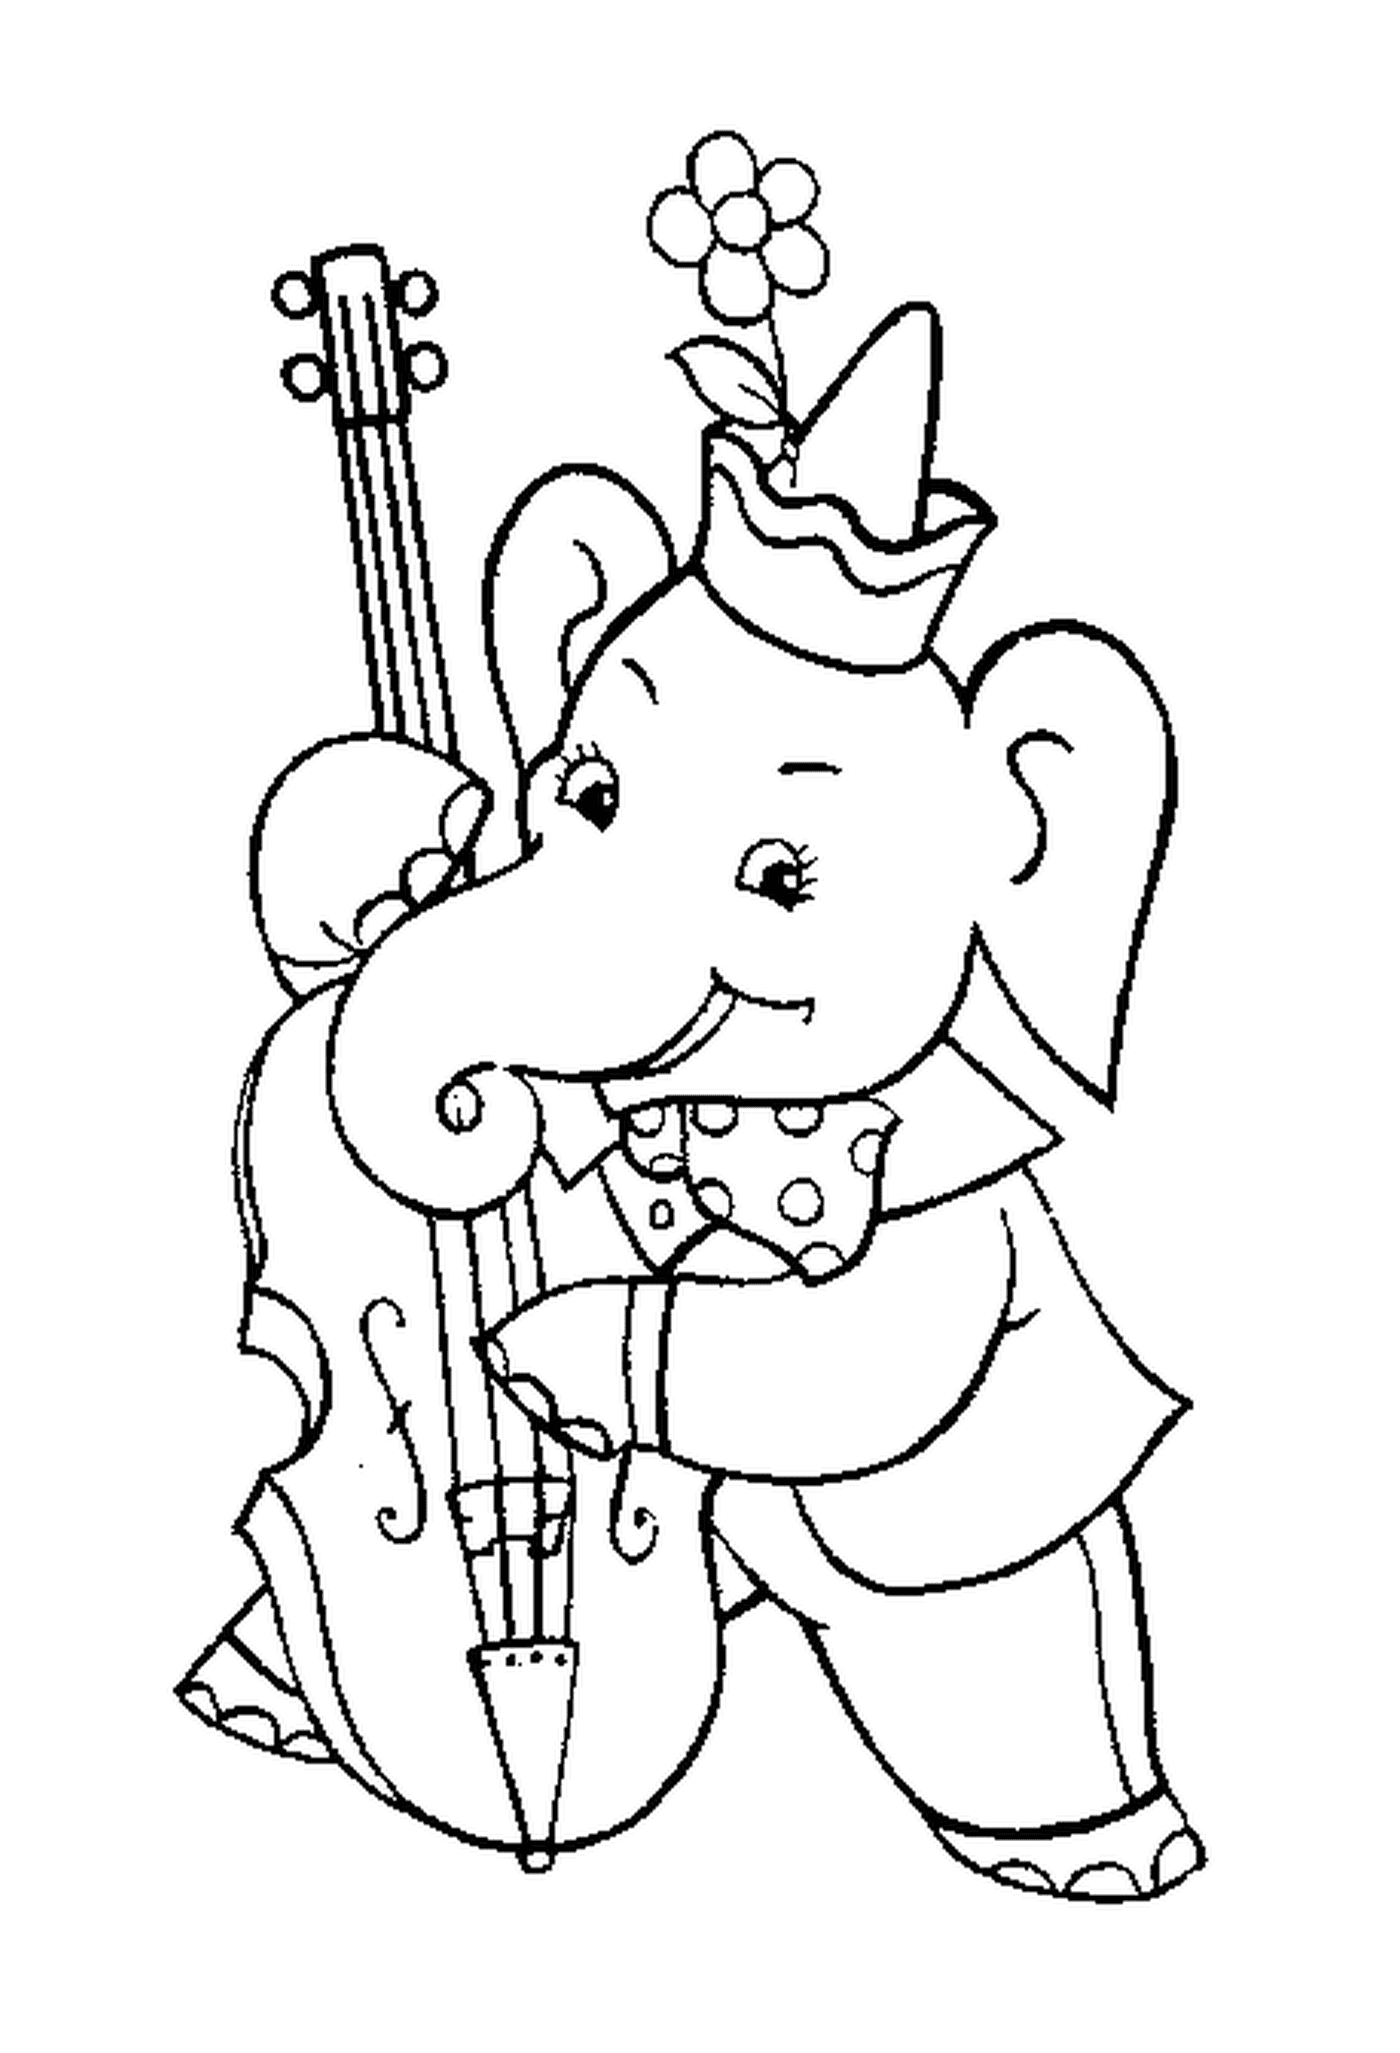  Слон играет в виолончели 